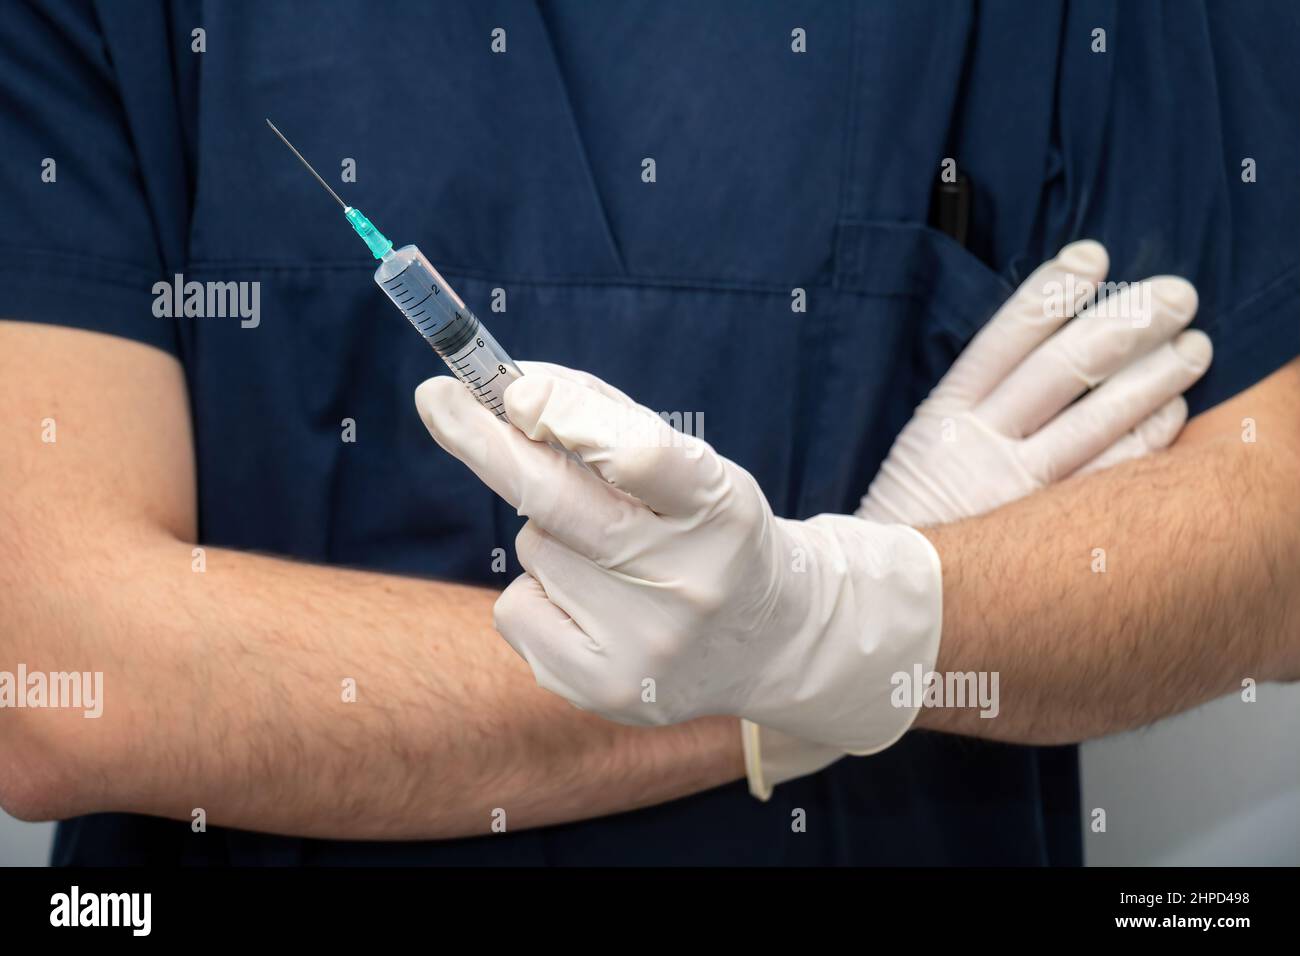 Médecin en uniforme médical bleu tenant en main avec un gant jetable, médicament liquide dans une seringue avec aiguille. Soins de santé, traitement de phys professionnels Banque D'Images